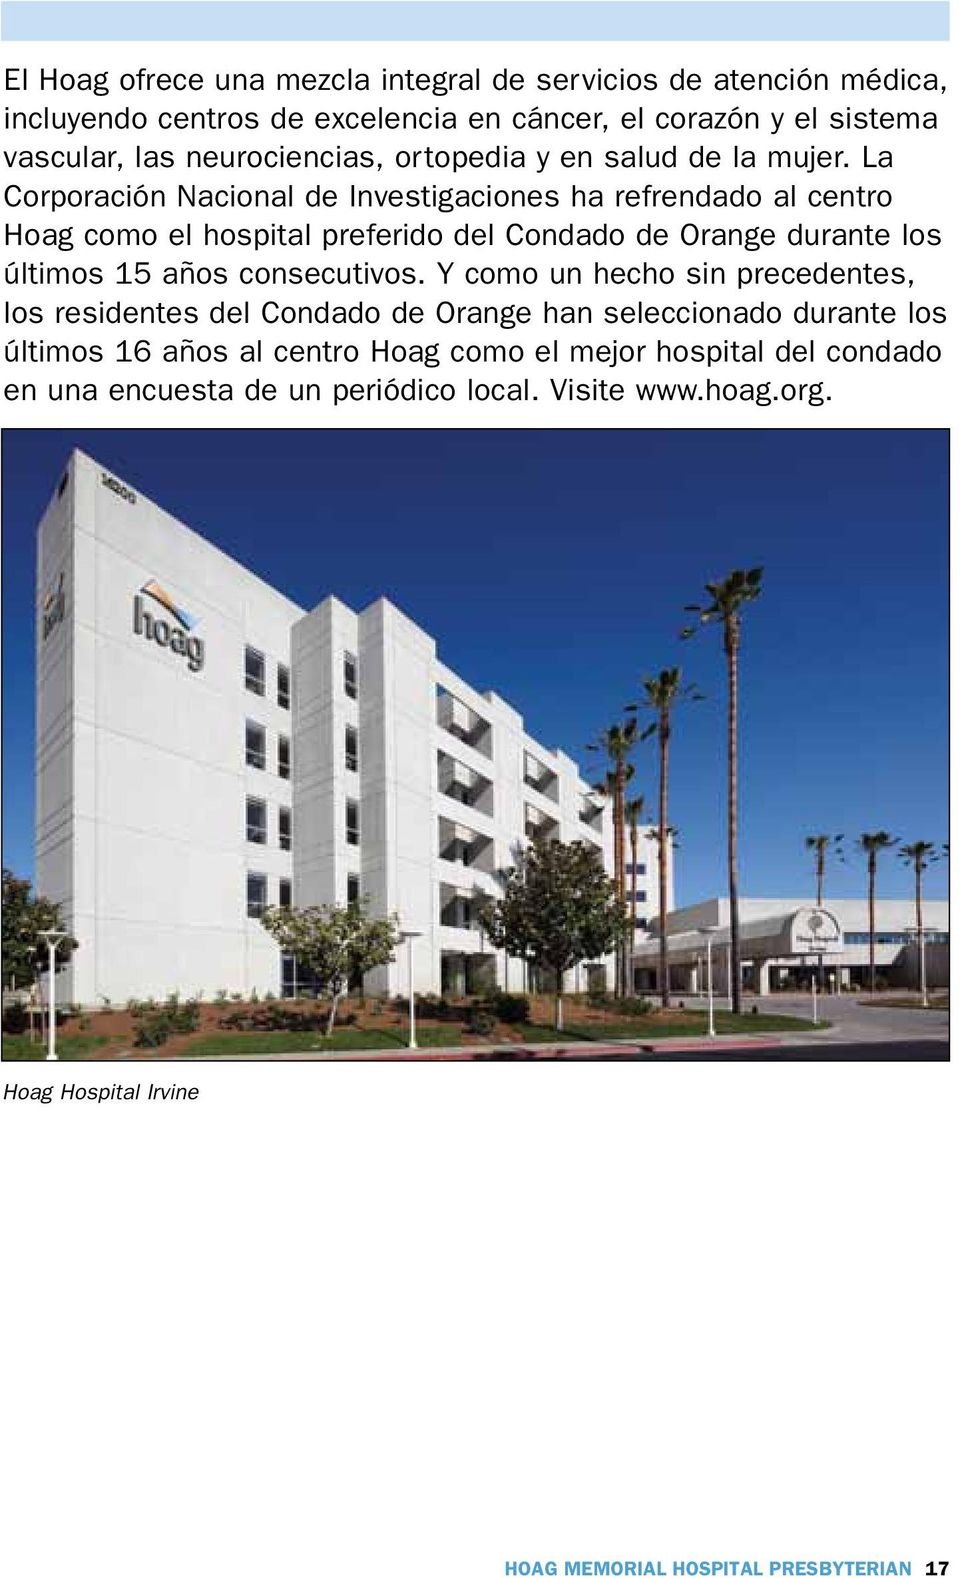 La Corporación Nacional de Investigaciones ha refrendado al centro Hoag como el hospital preferido del Condado de Orange durante los últimos 15 años consecutivos.